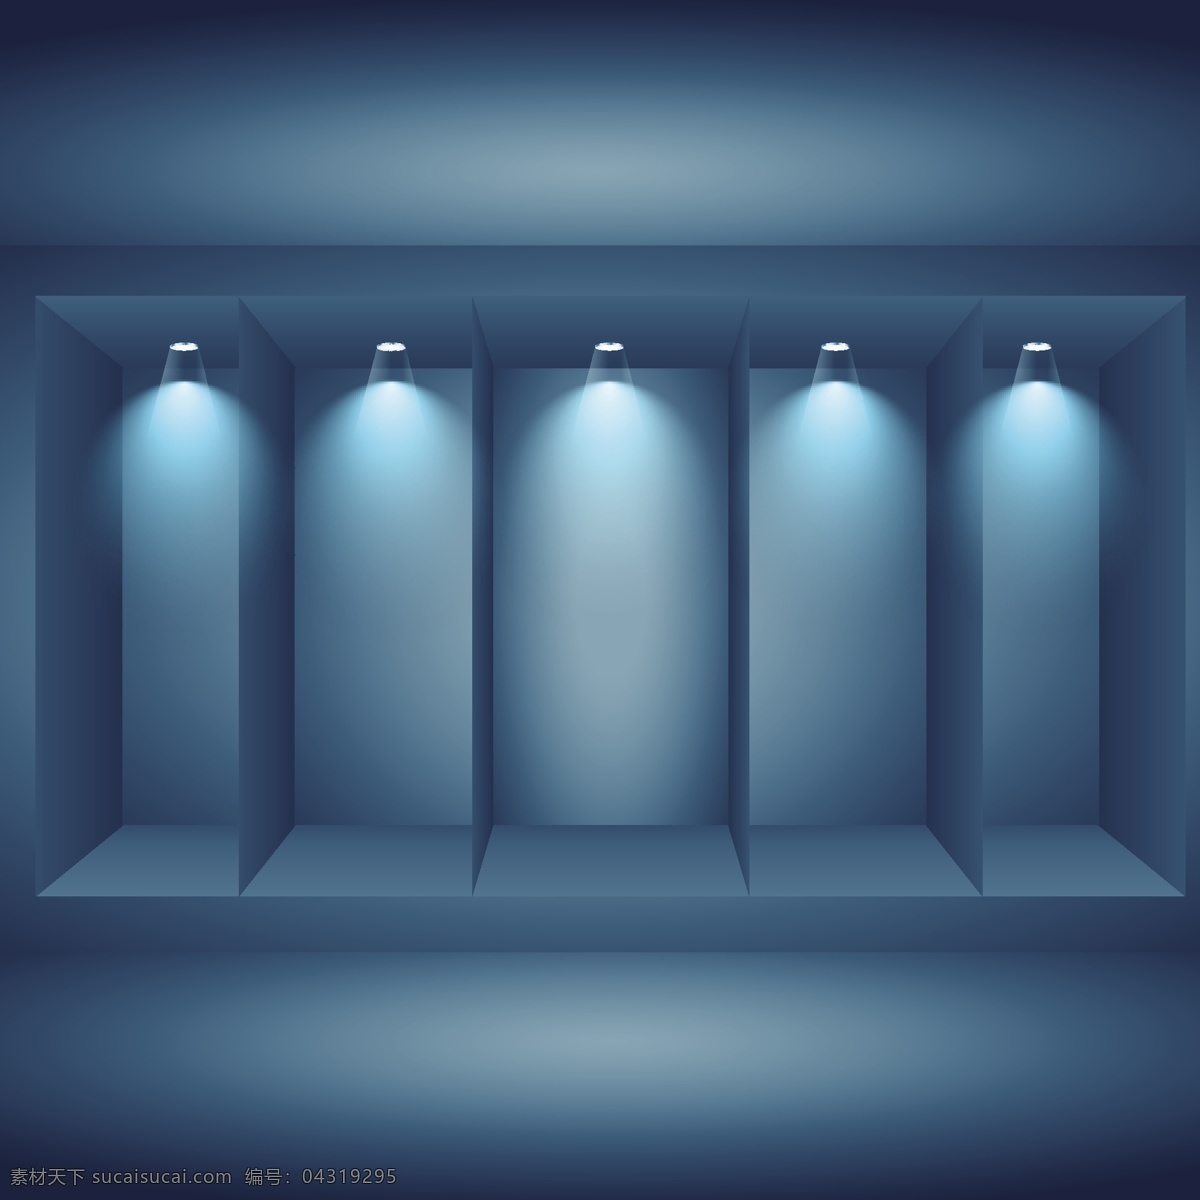 演播室 灯光 演示 背景 样机 蓝色 照片 3d 广告 模拟 射灯 室内 渐变 清洁 工作室 显示 黑暗